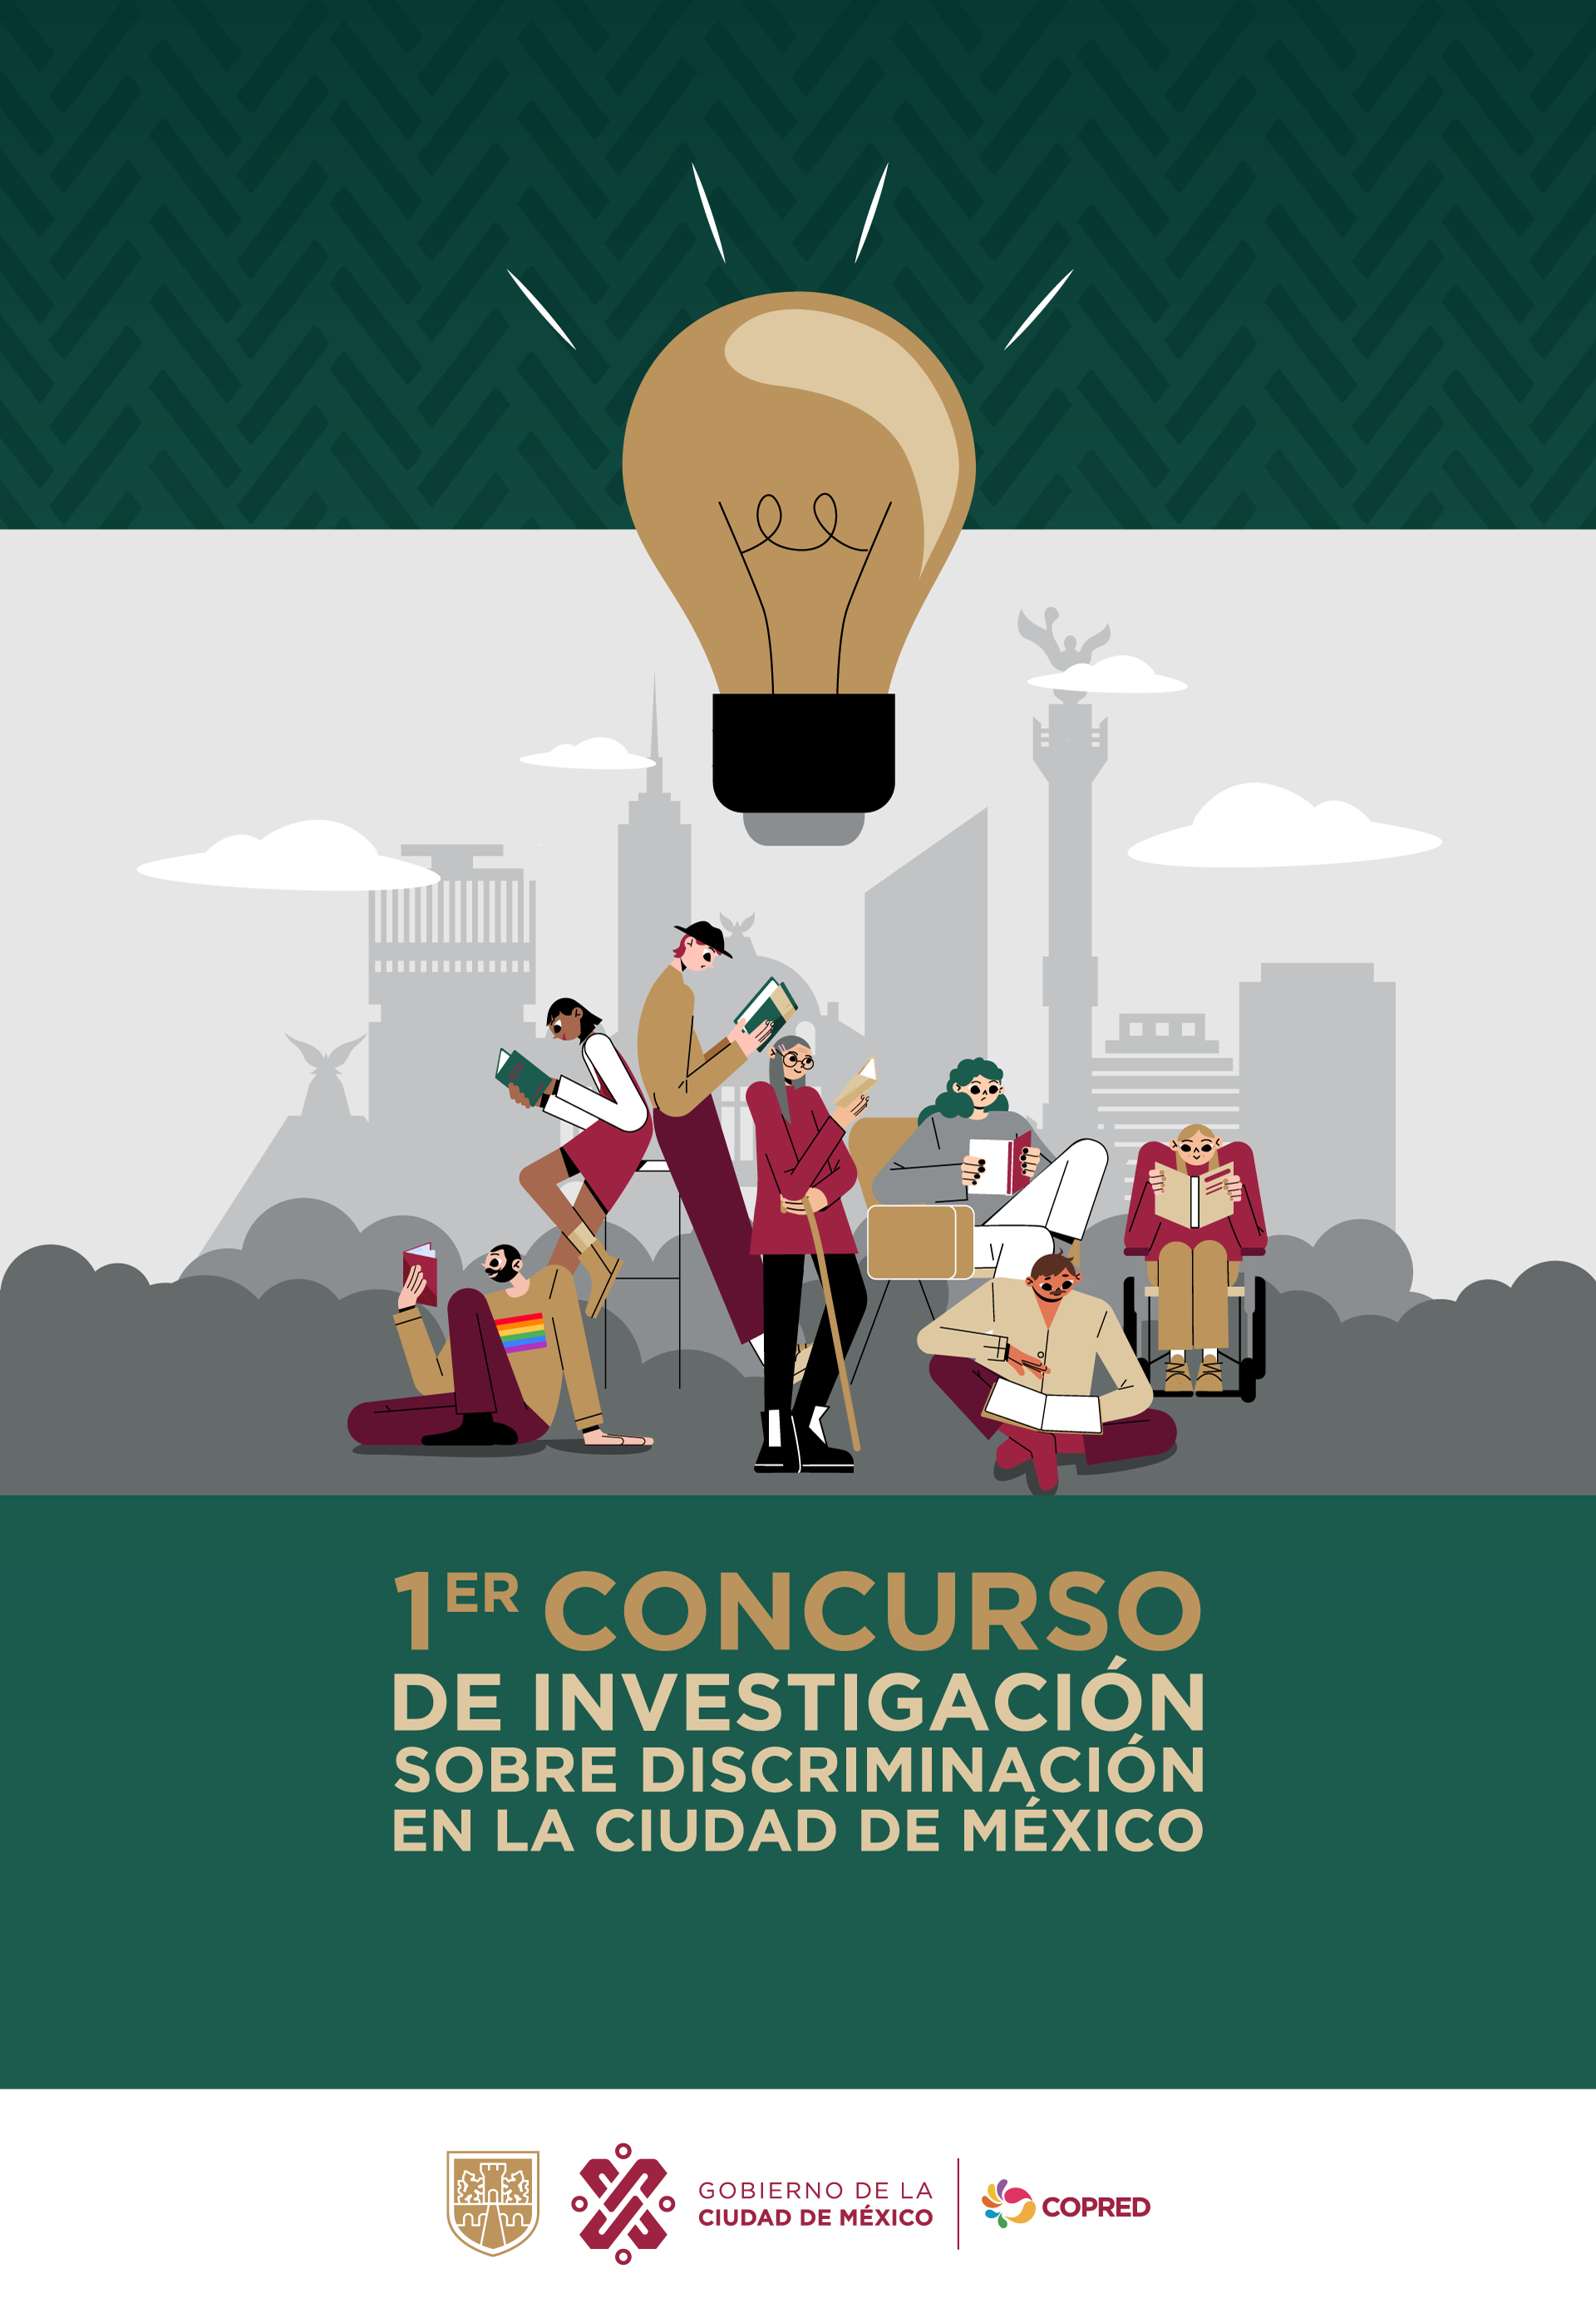 1er Concurso de Investigación sobre Discriminación en la Ciudad de México